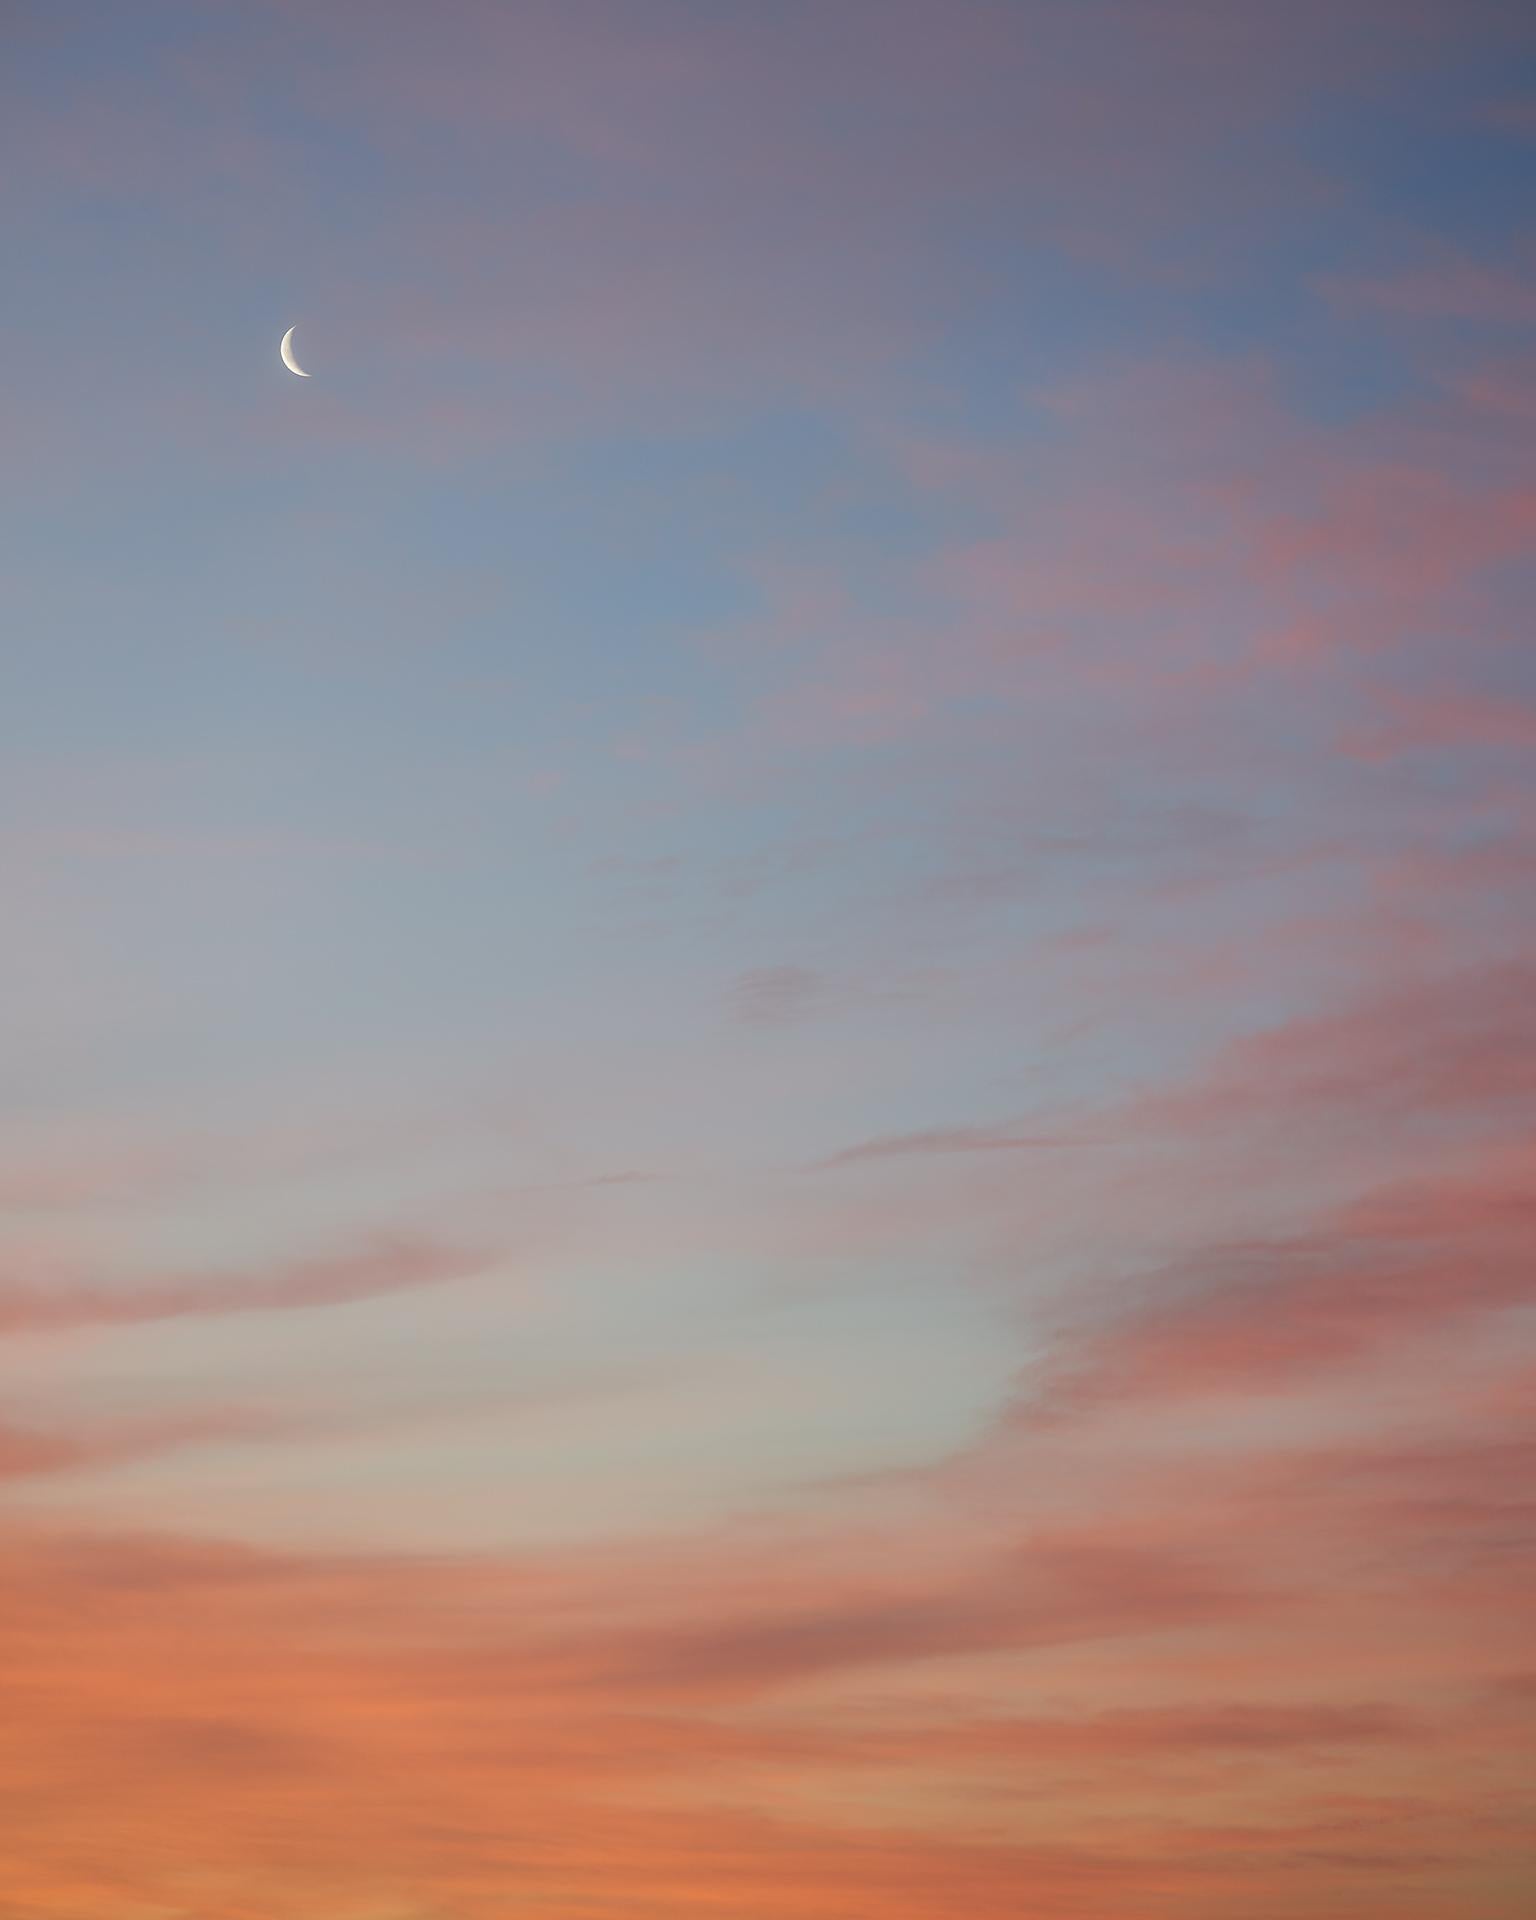 Winter Moon Rising de Frank Schott, issu d'une série d'œuvres capturant la palette de couleurs éthérées du ciel entre le crépuscule et l'aube

32 x 40 pouces / 81cm x 102cm
édition de 25
 
60 x 48 pouces / 152cm x 122cm
édition de